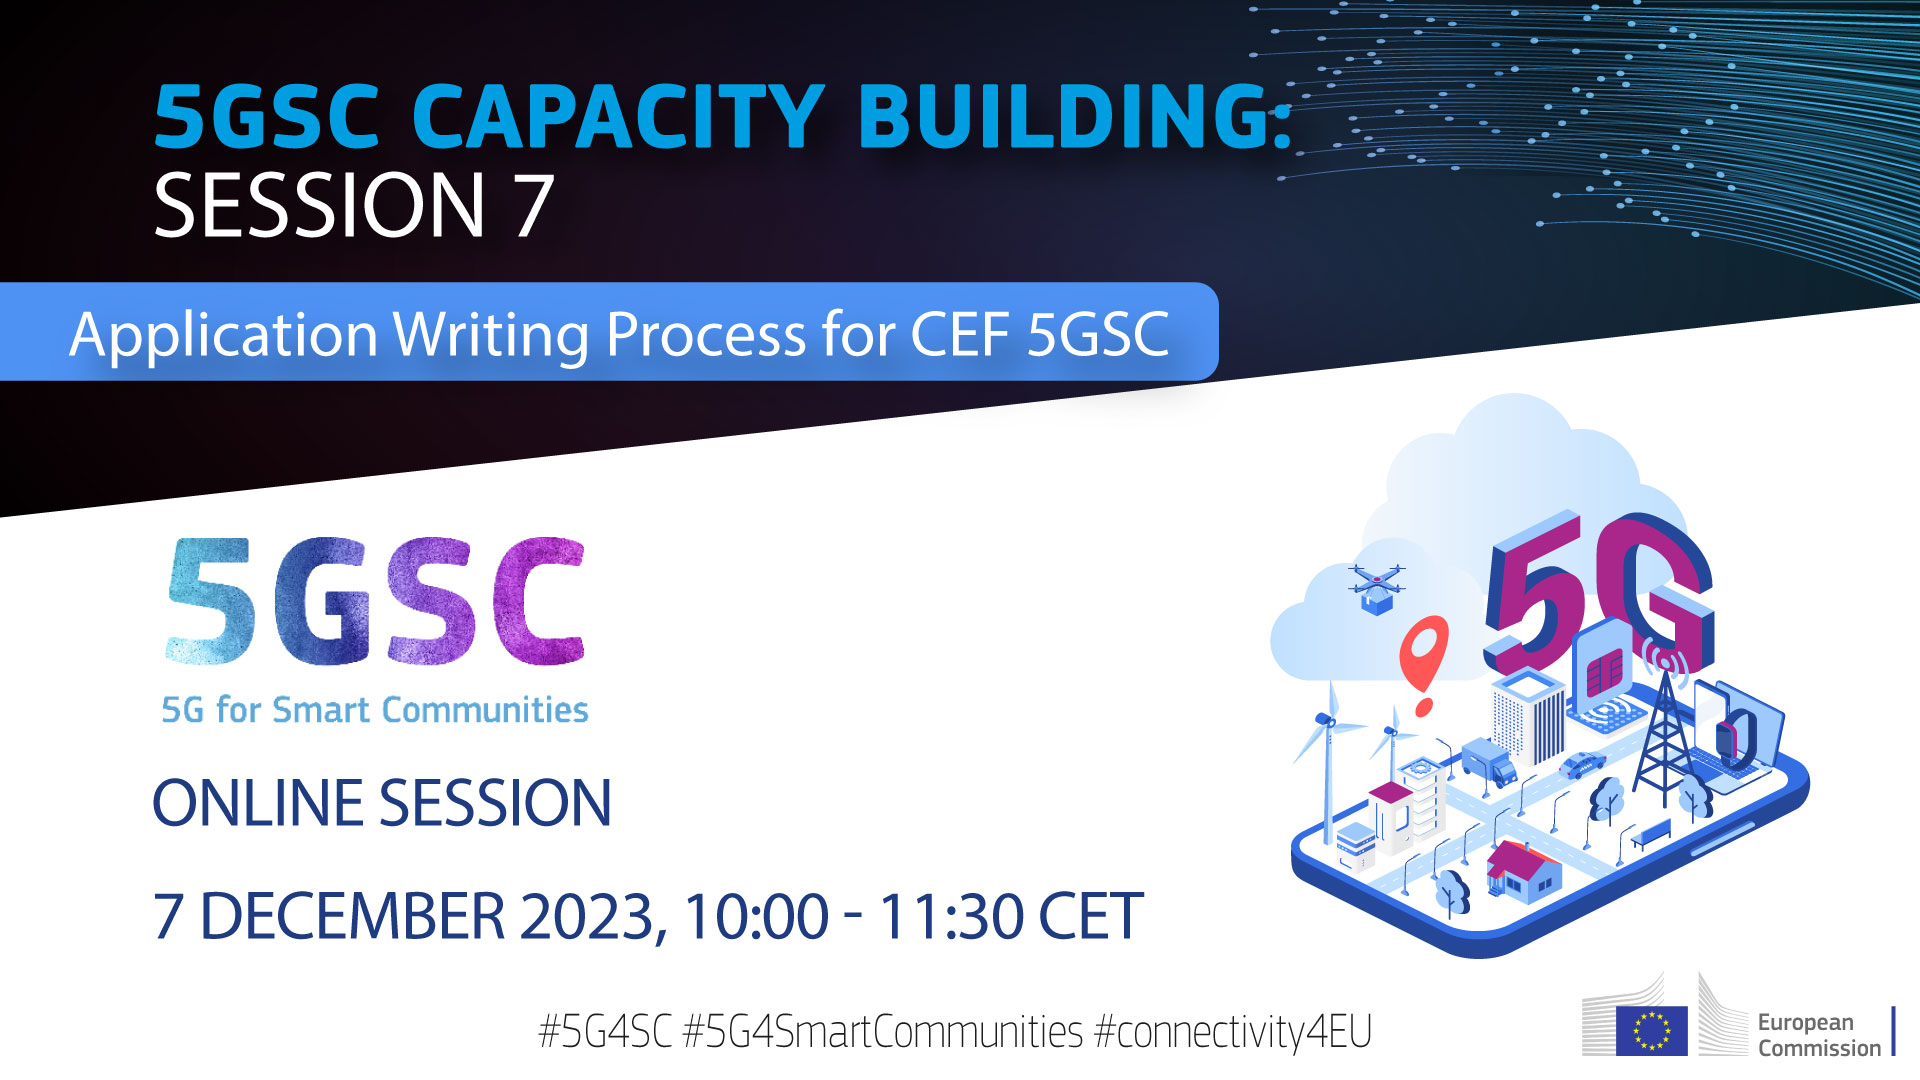 plakat wydarzenia z tekstem Platforma Wsparcia 5GSC ma przyjemność zaprosić Państwa na nadchodzące 7. sesję budowania zdolności 5GSC pt. „Zarządzanie wnioskami na 5GSC 5GSC” oraz datę/godzinę wydarzenia.